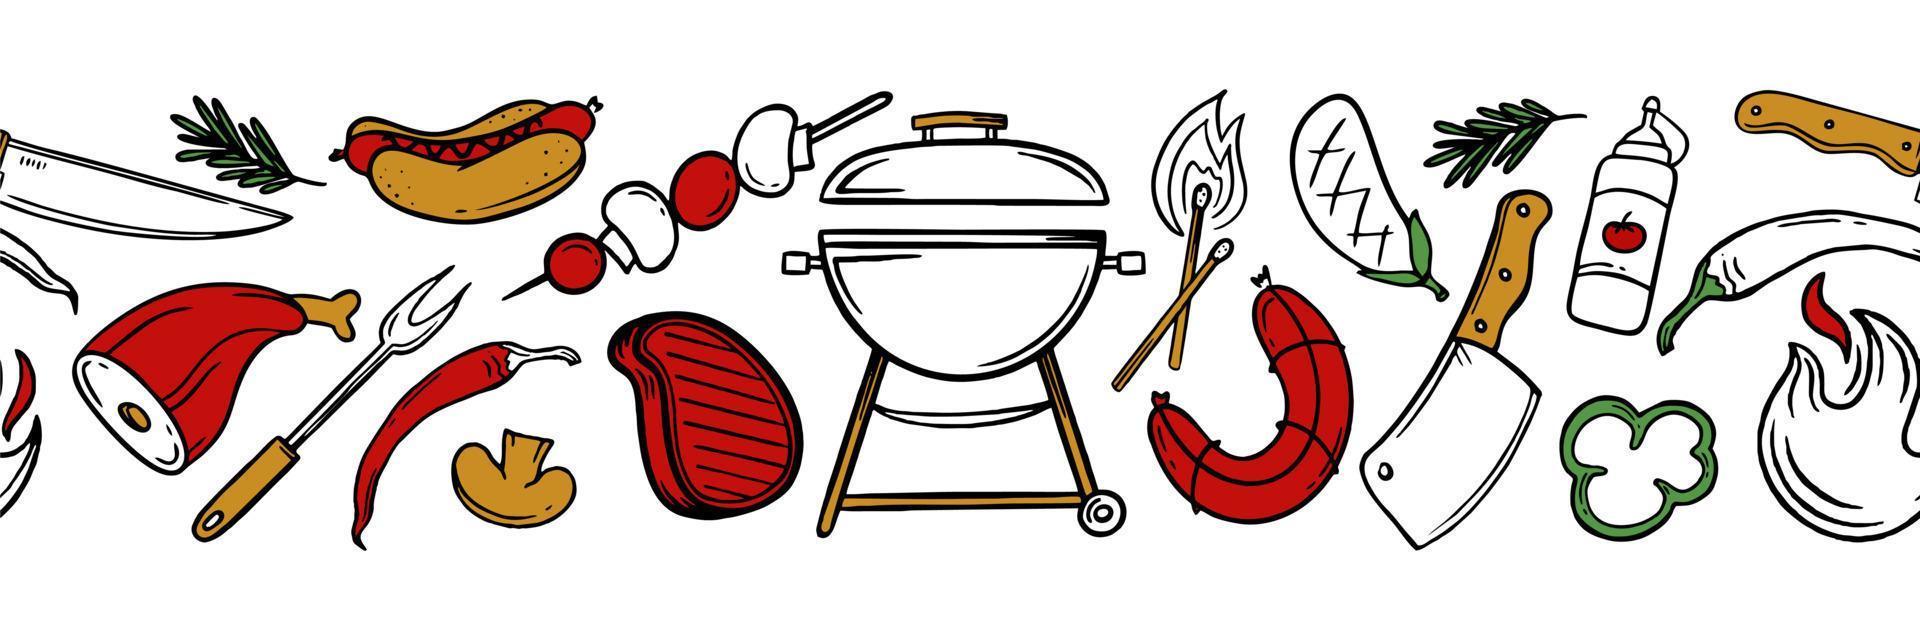 modello orizzontale con elementi grill e barbecue per menu ristorante bar caffetteria su sfondo bianco illustrazione vettoriale di scarabocchi